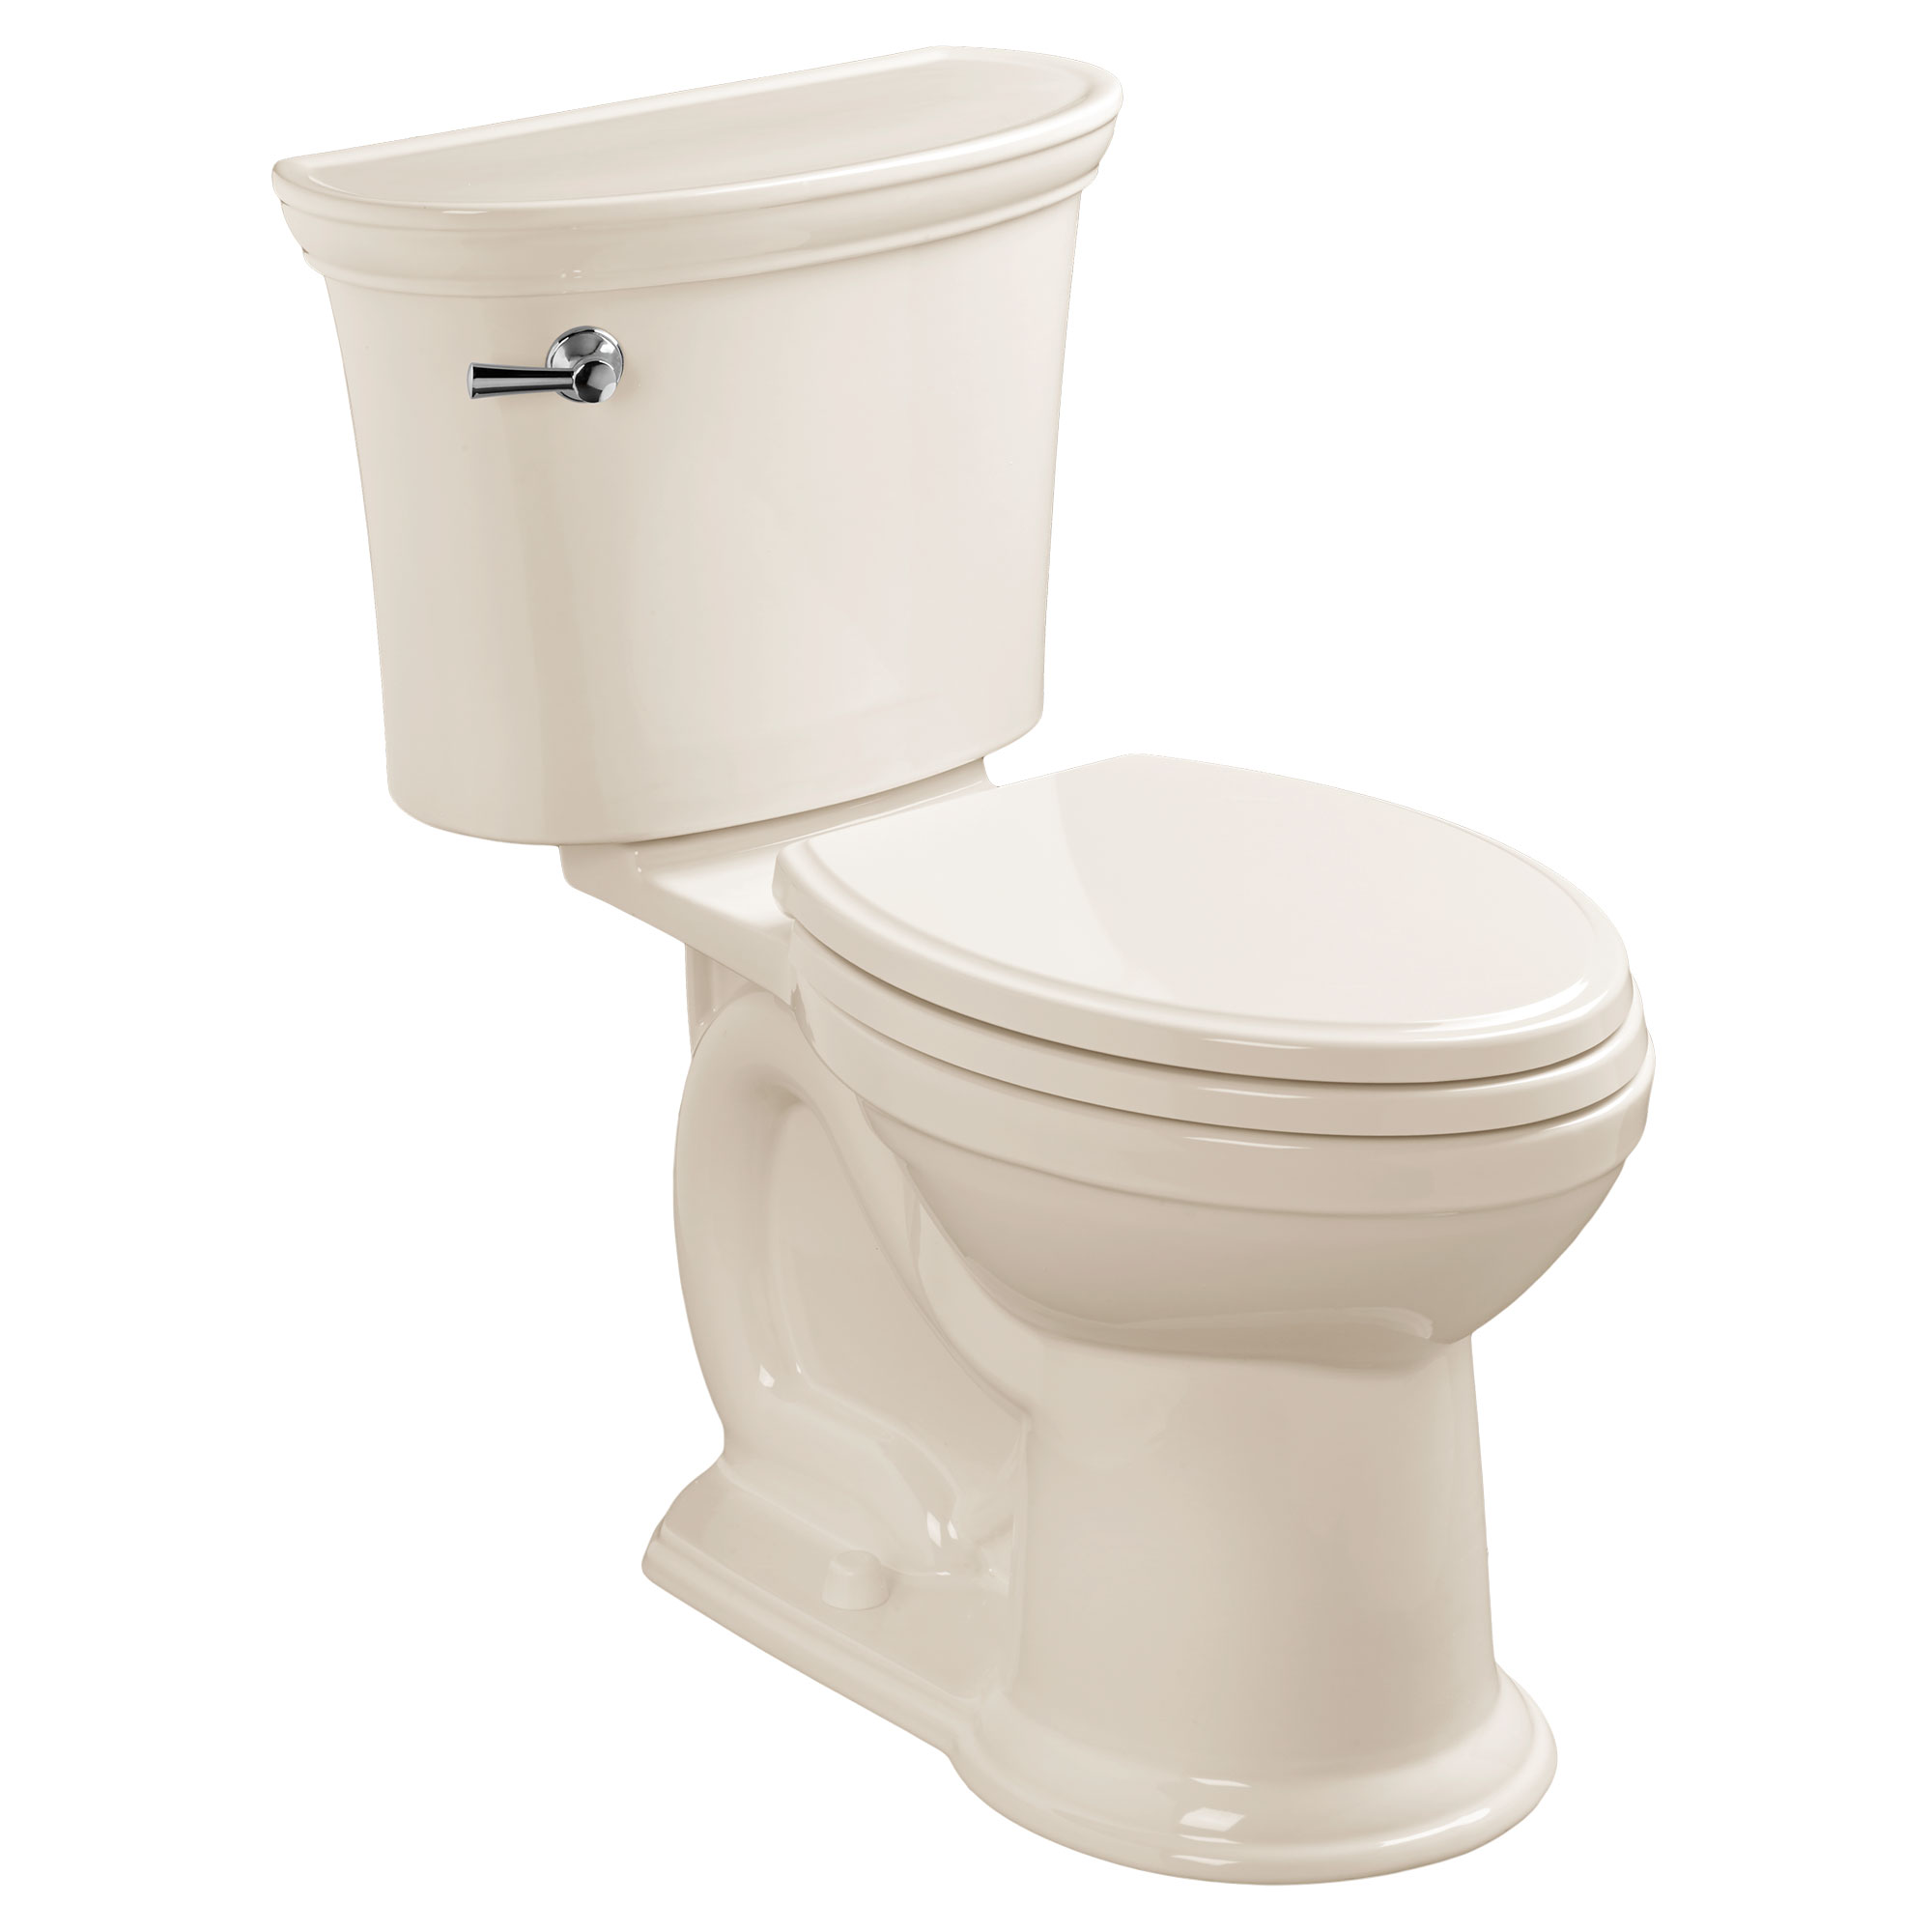 Toilette Heritage VorMax, 2 pièces, 1,28 gpc/4,8 lpc, à cuvette allongée à hauteur de chaise, sans siège